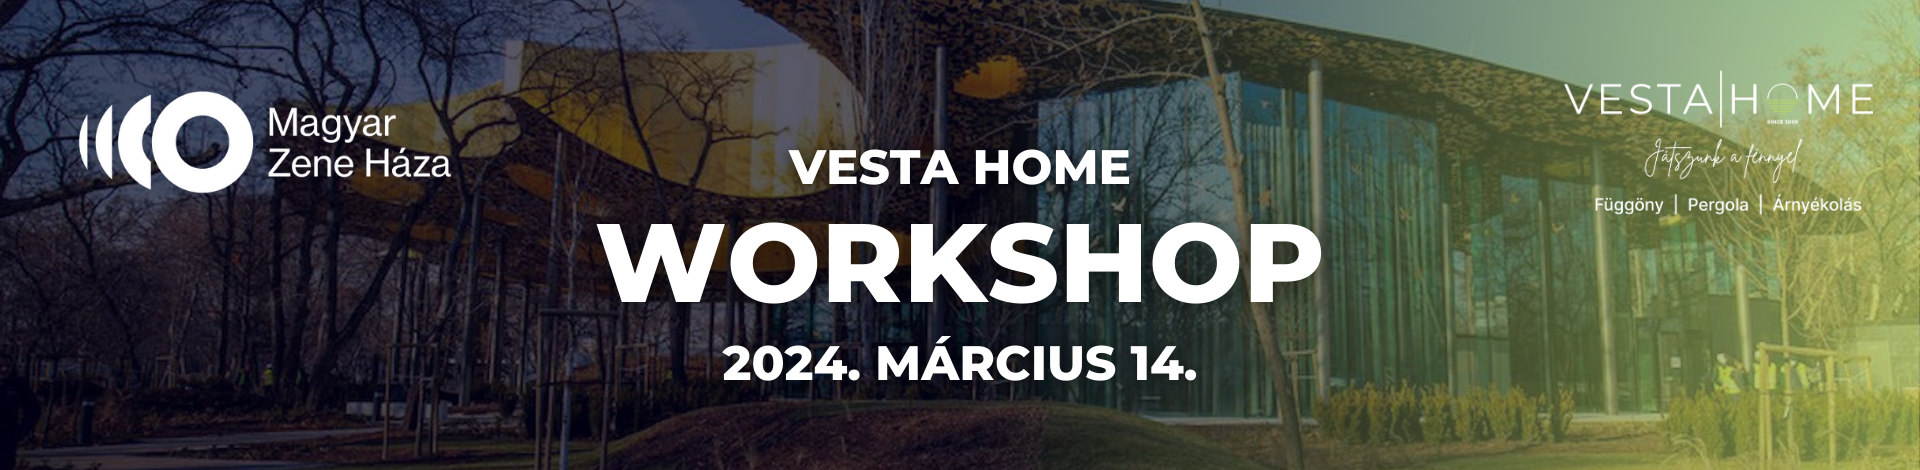 Vesta Home Worskhop a Magyar Zene Házában